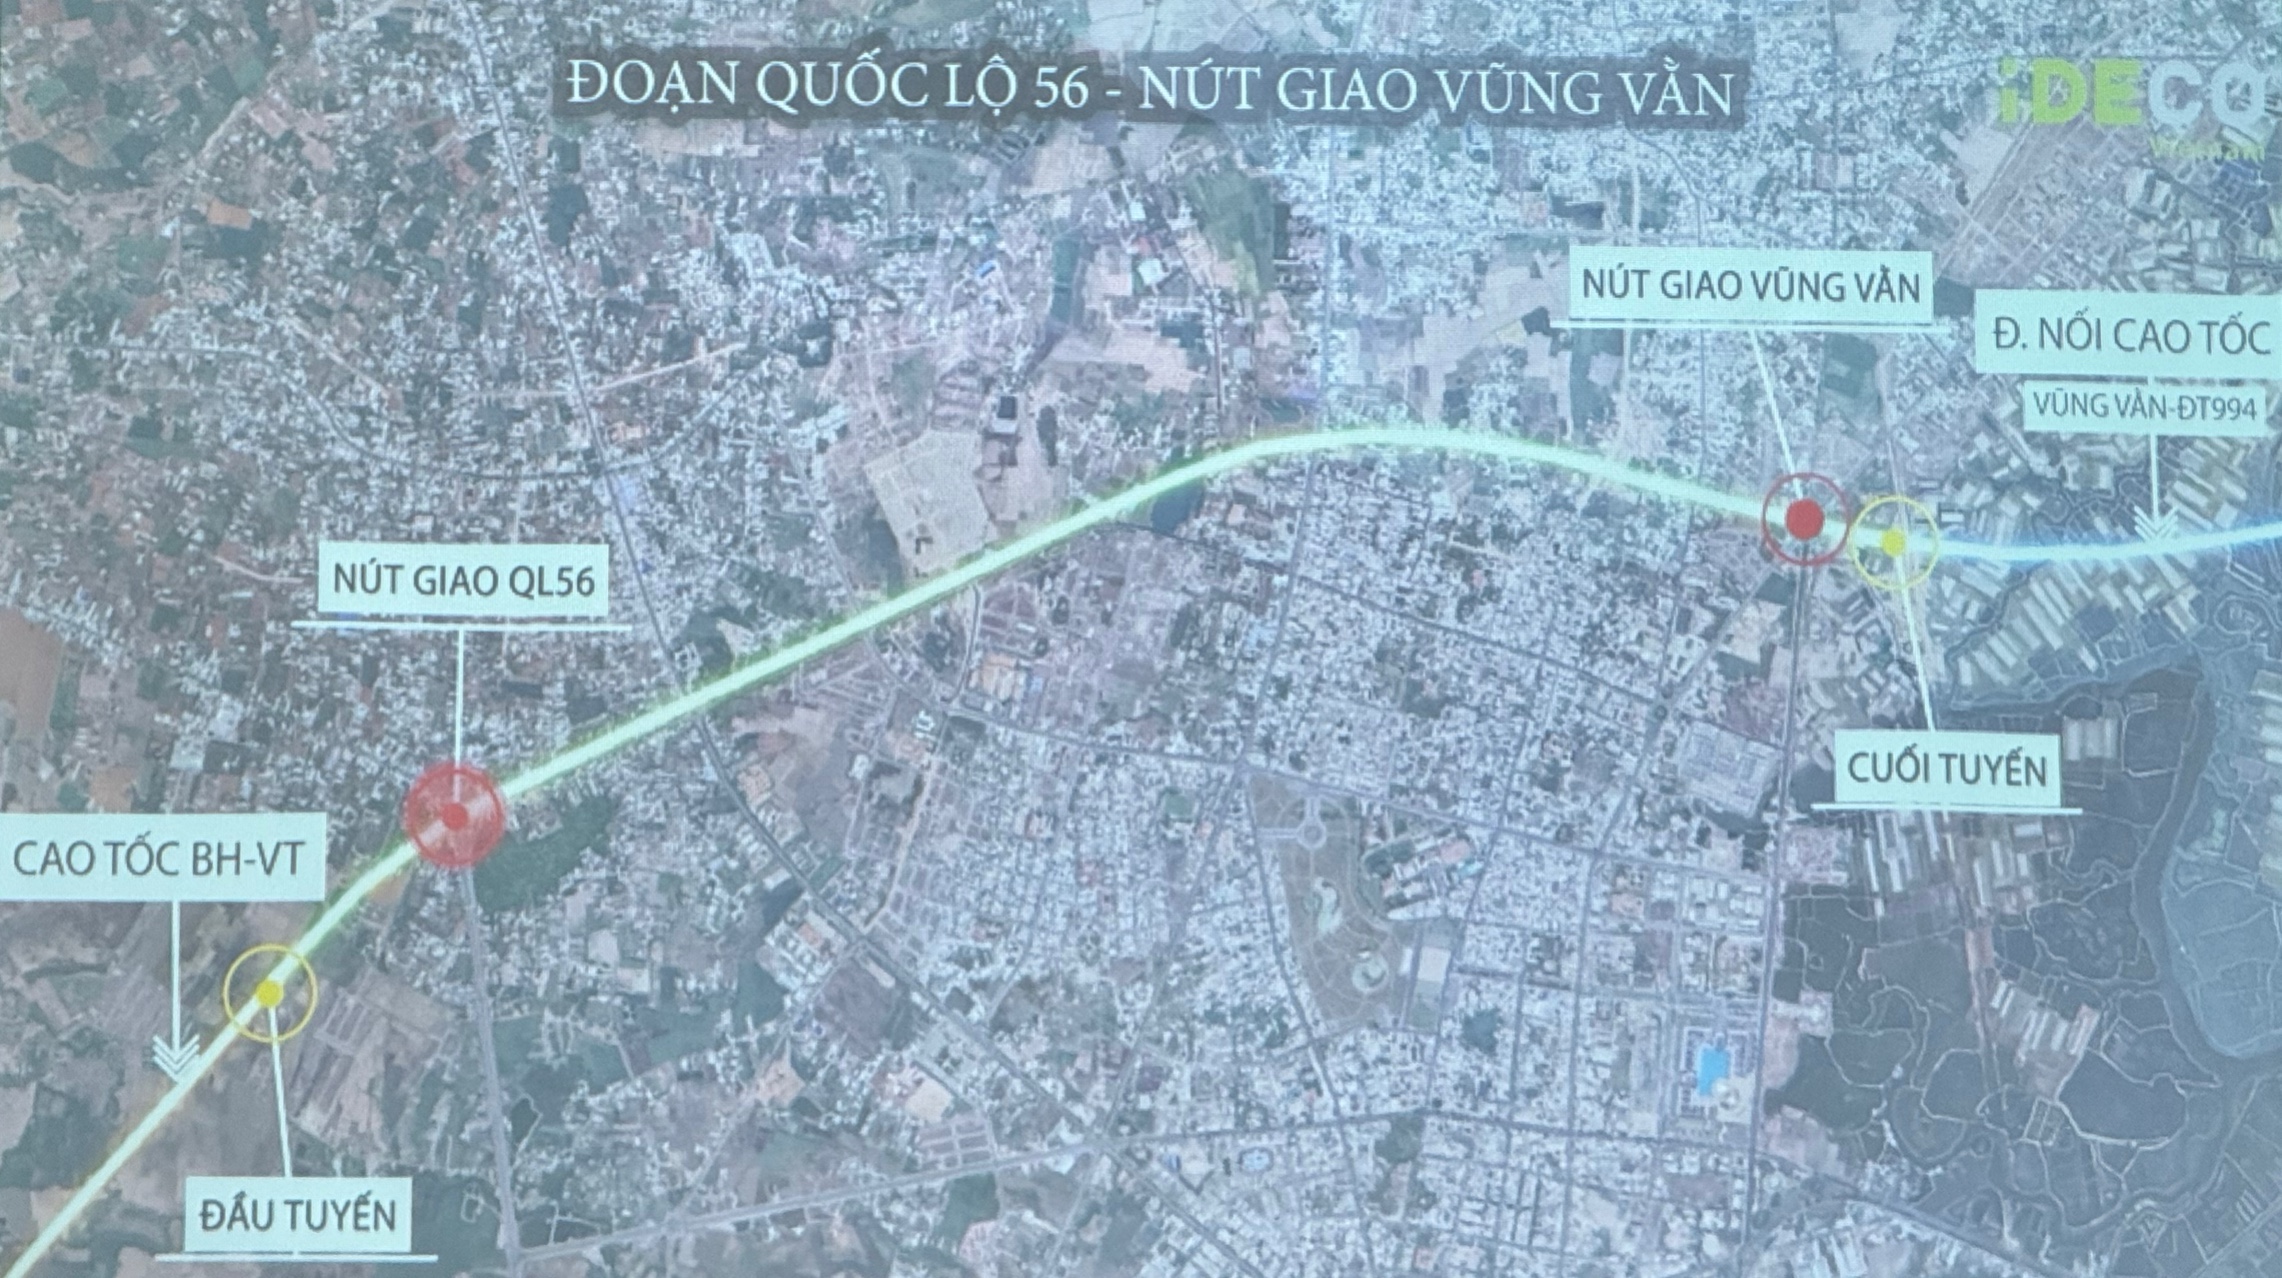 Đường kết nối cao tốc Biên Hòa - Vũng Tàu có mặt bằng trong tháng 7- Ảnh 1.